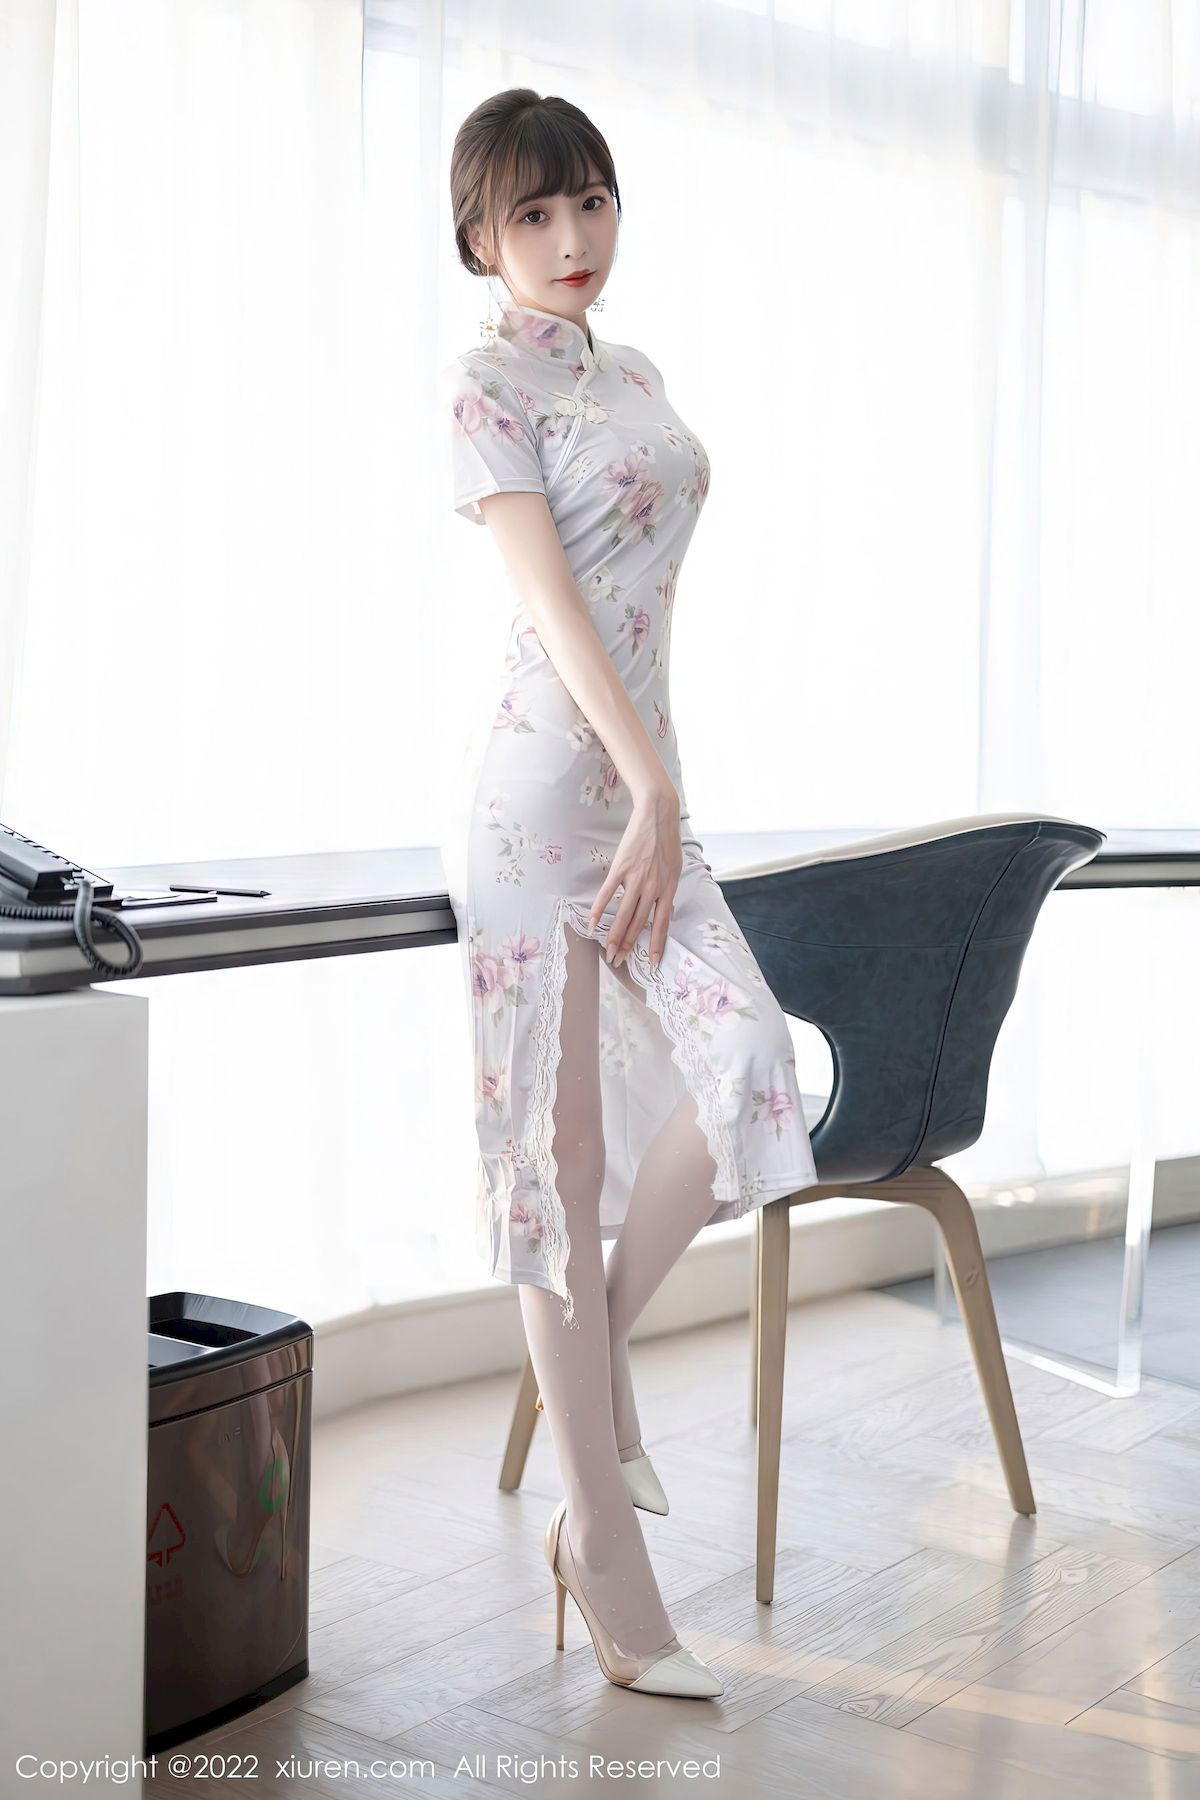 林星阑白色图案旗袍搭配白色丝袜性感写真